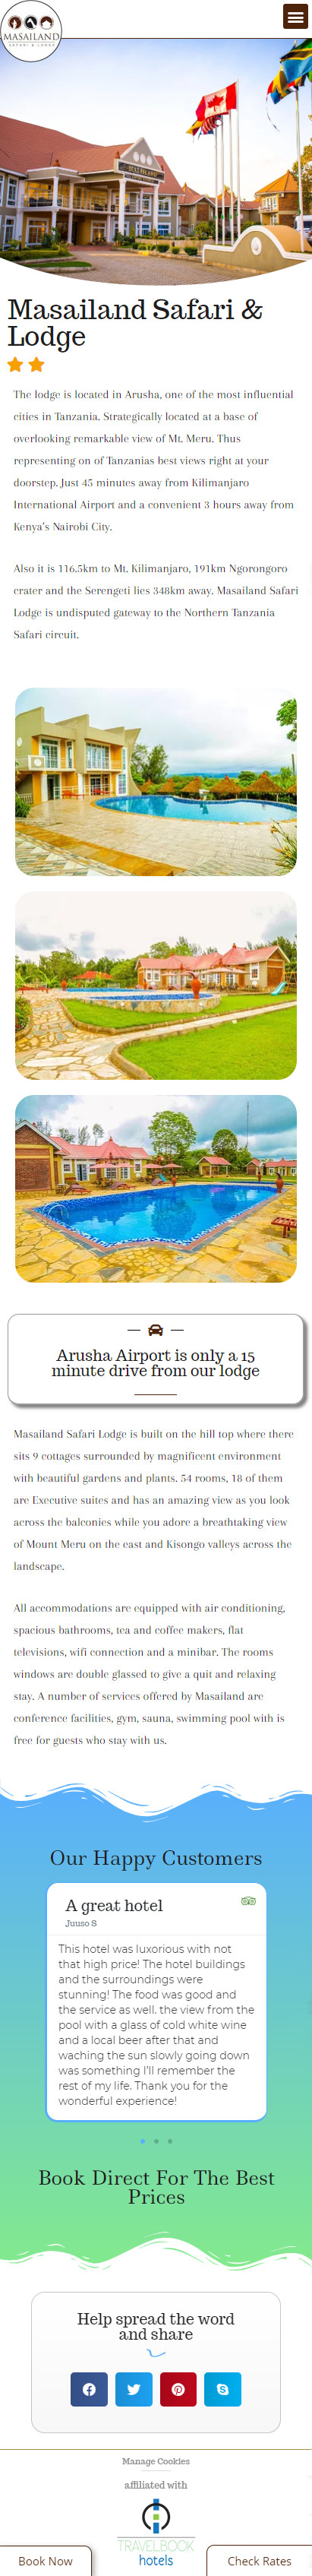 Mobile design for Masailand Safari & Lodge